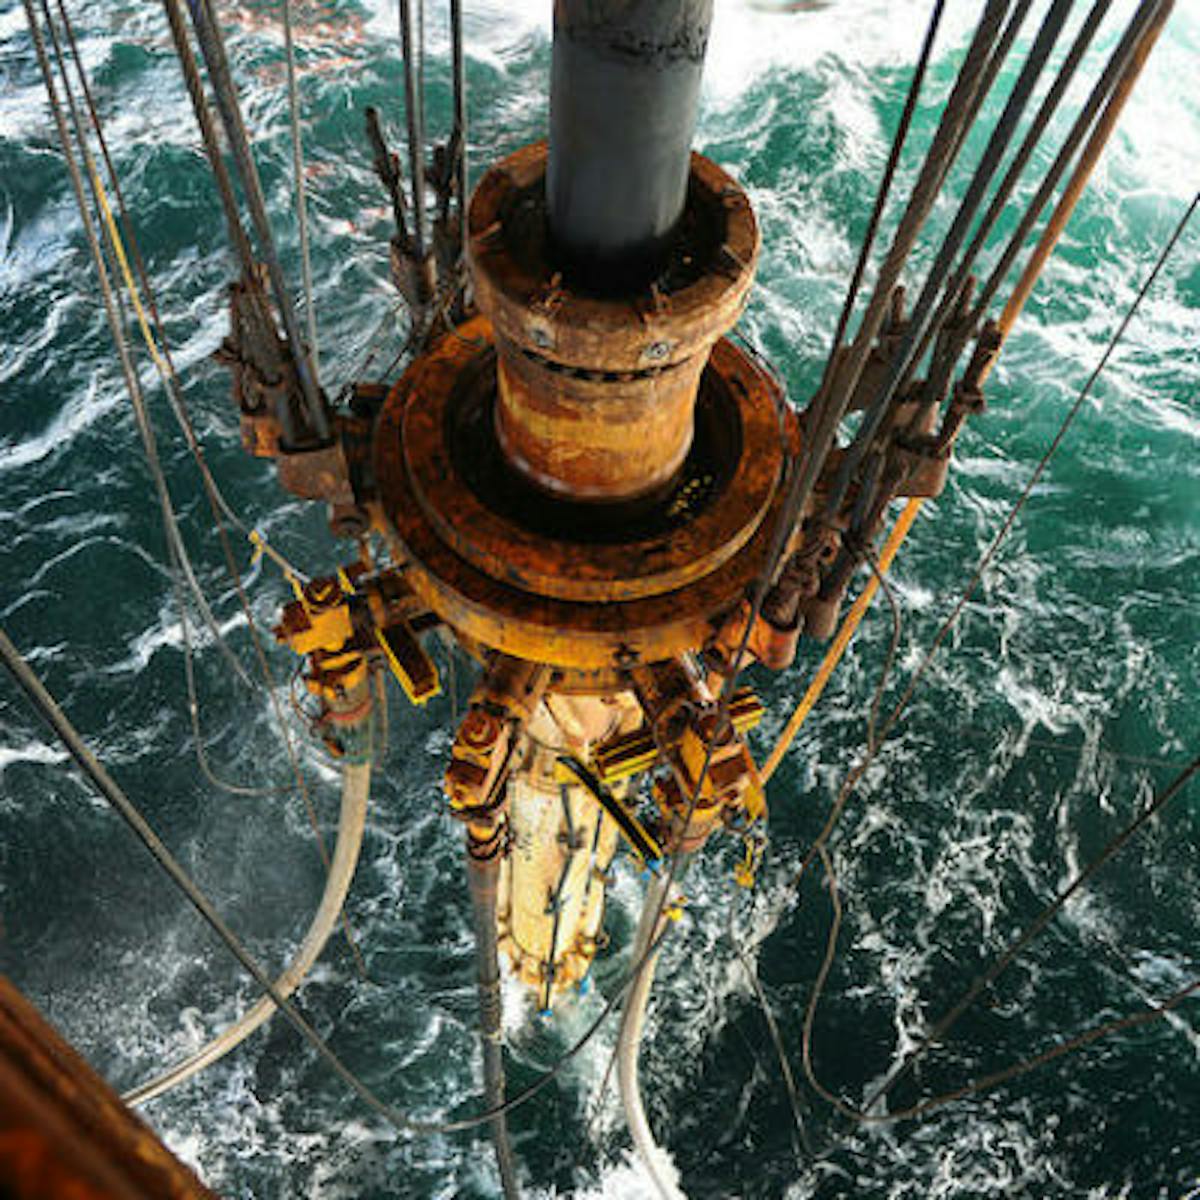 Transocean Leader drilling on Johan Sverdrup field offshore Stavanger.